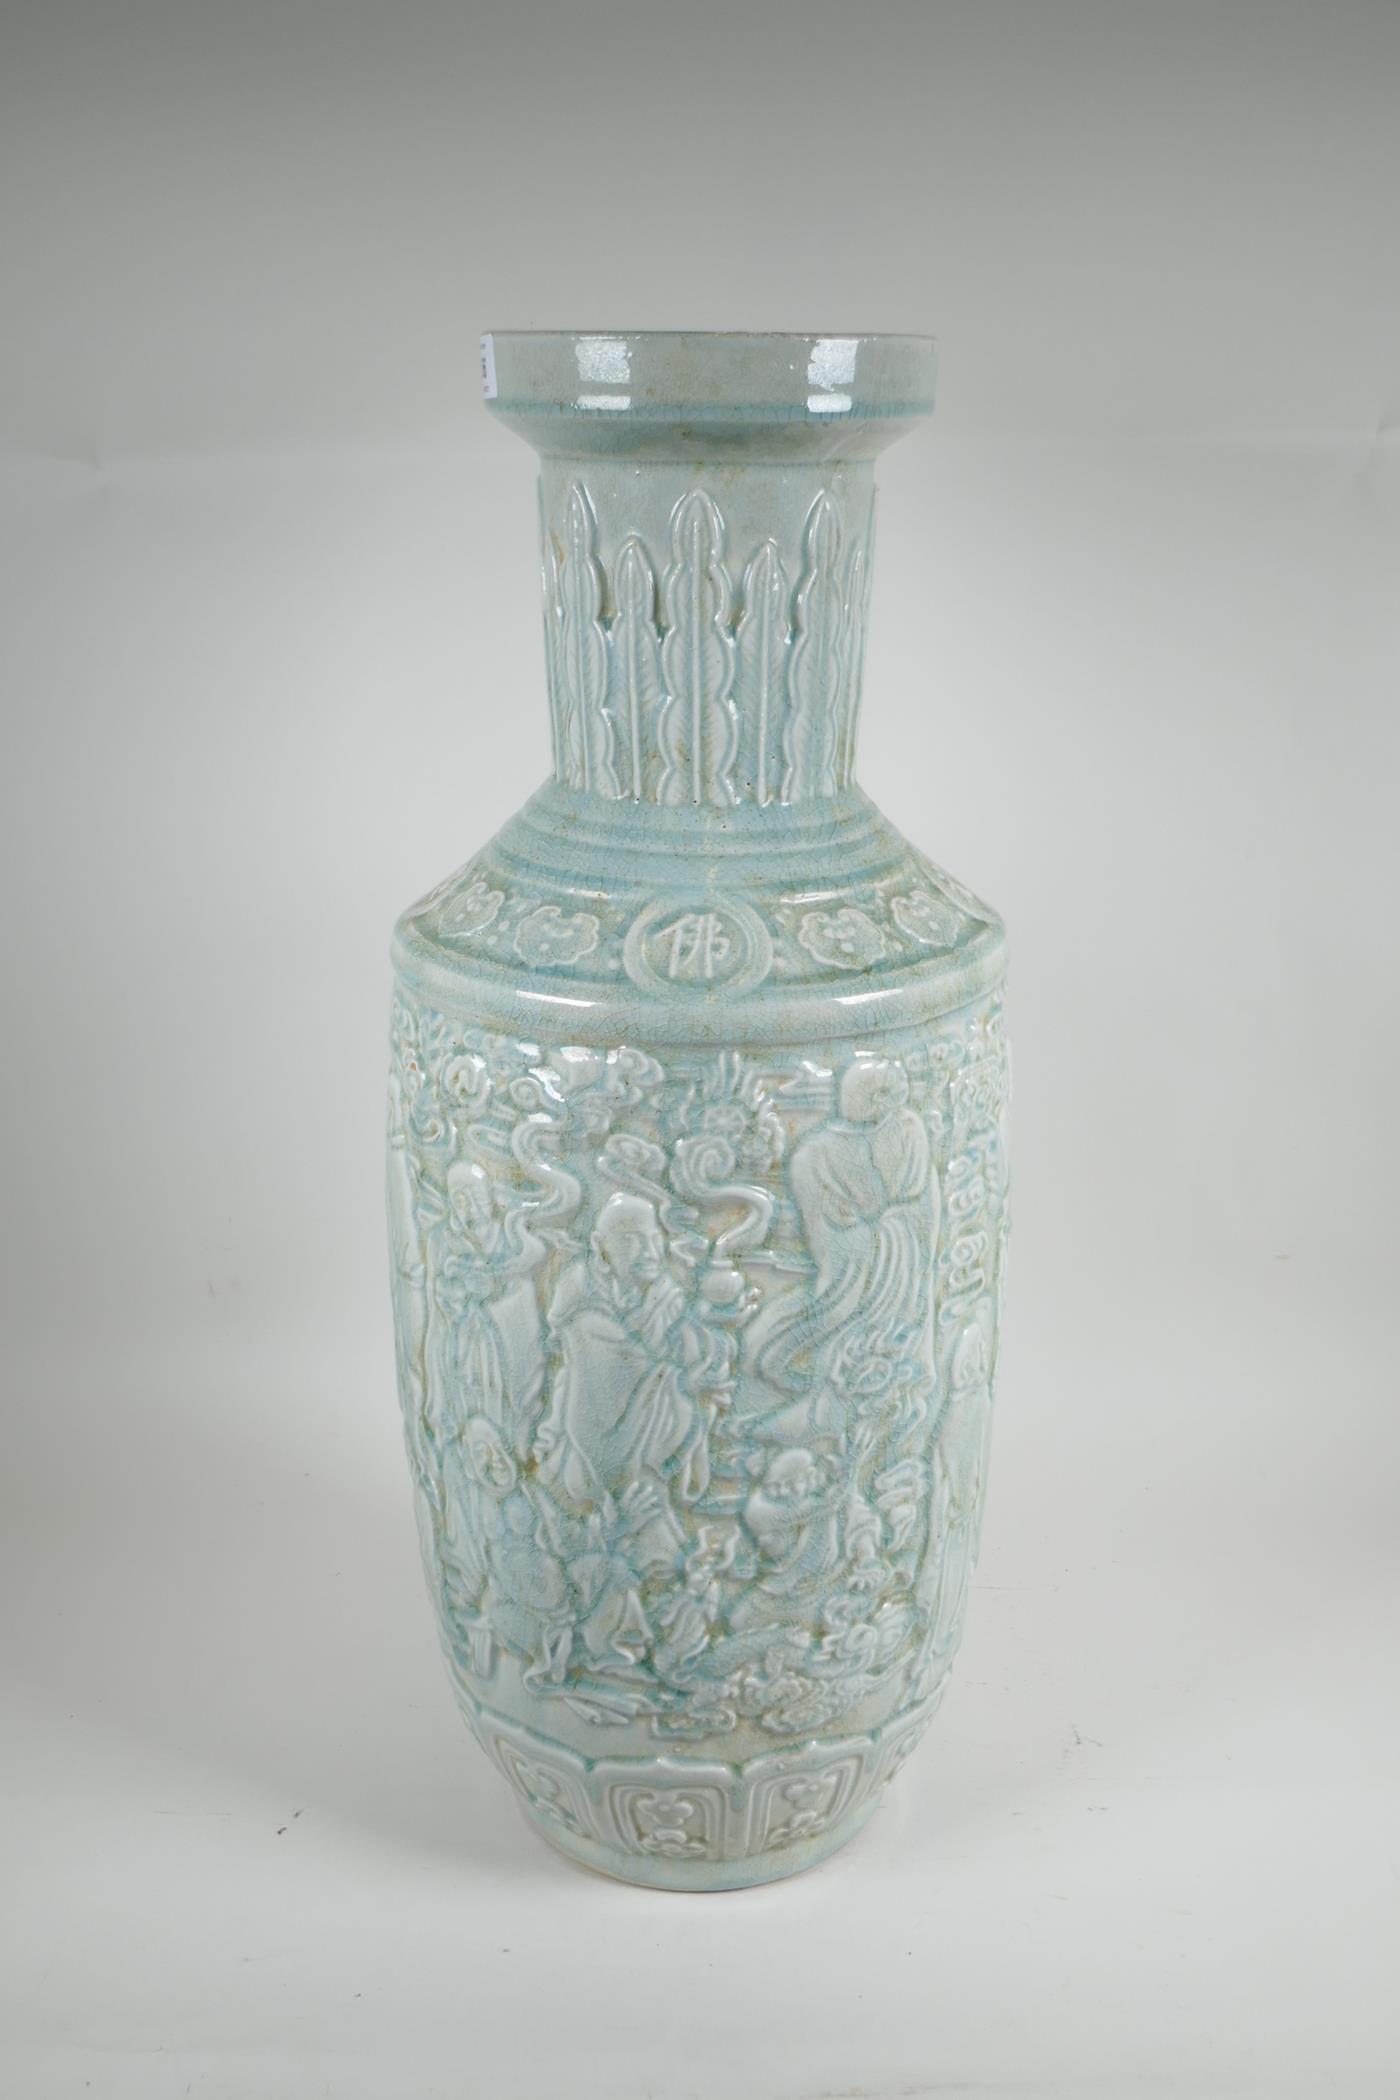 A Chinese celadon glazed ceramic vase, with raised decoration, 24" high - Image 3 of 5